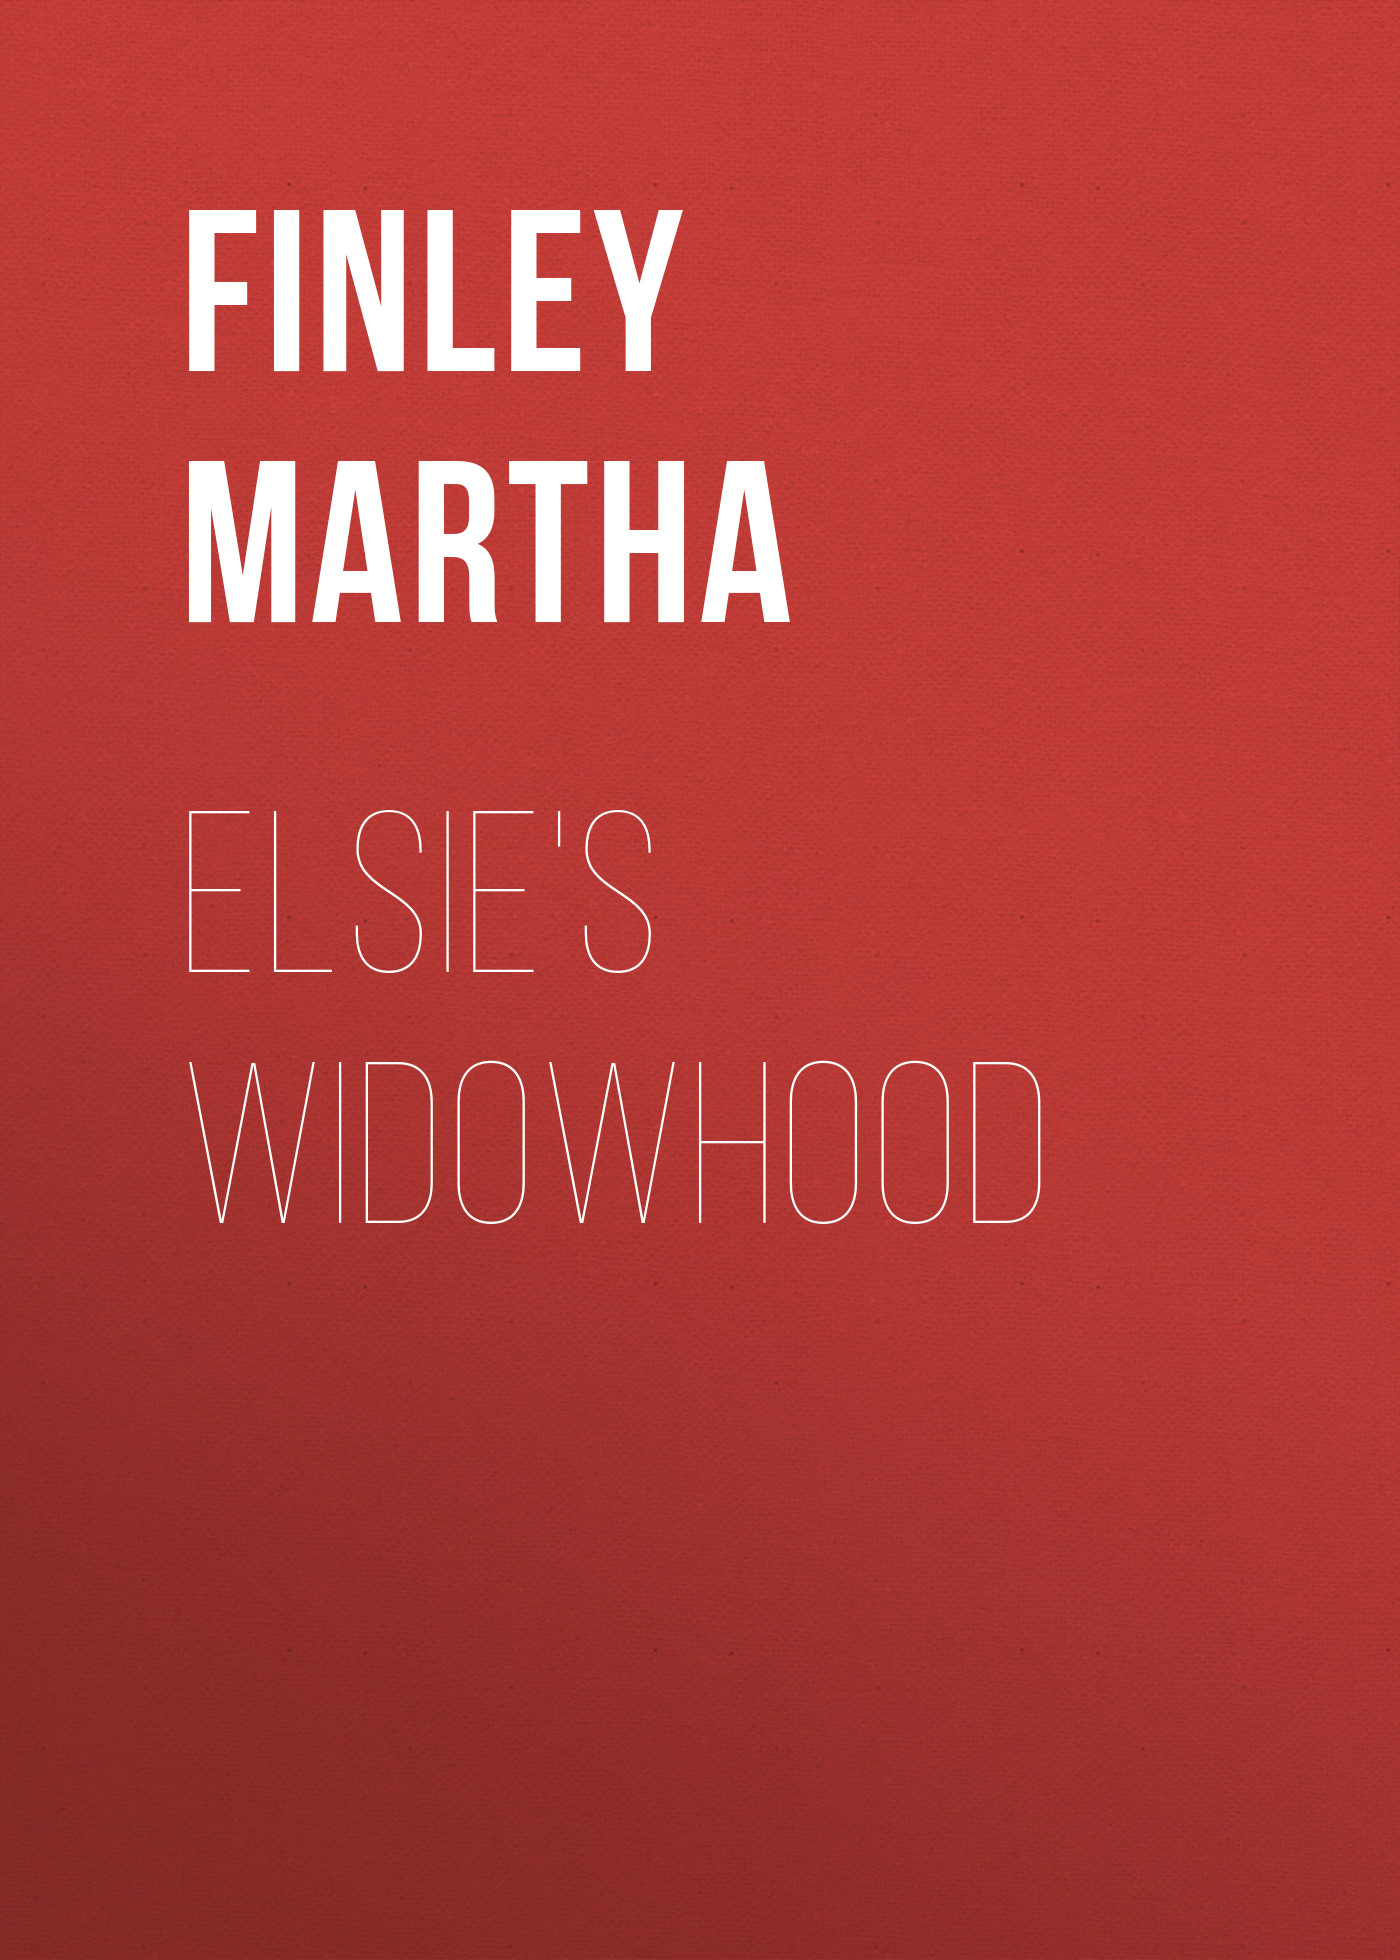 Книга Elsie's Widowhood из серии , созданная Martha Finley, может относится к жанру Зарубежная эзотерическая и религиозная литература, Зарубежная старинная литература, Зарубежная классика, Зарубежные детские книги. Стоимость электронной книги Elsie's Widowhood с идентификатором 24728241 составляет 0 руб.